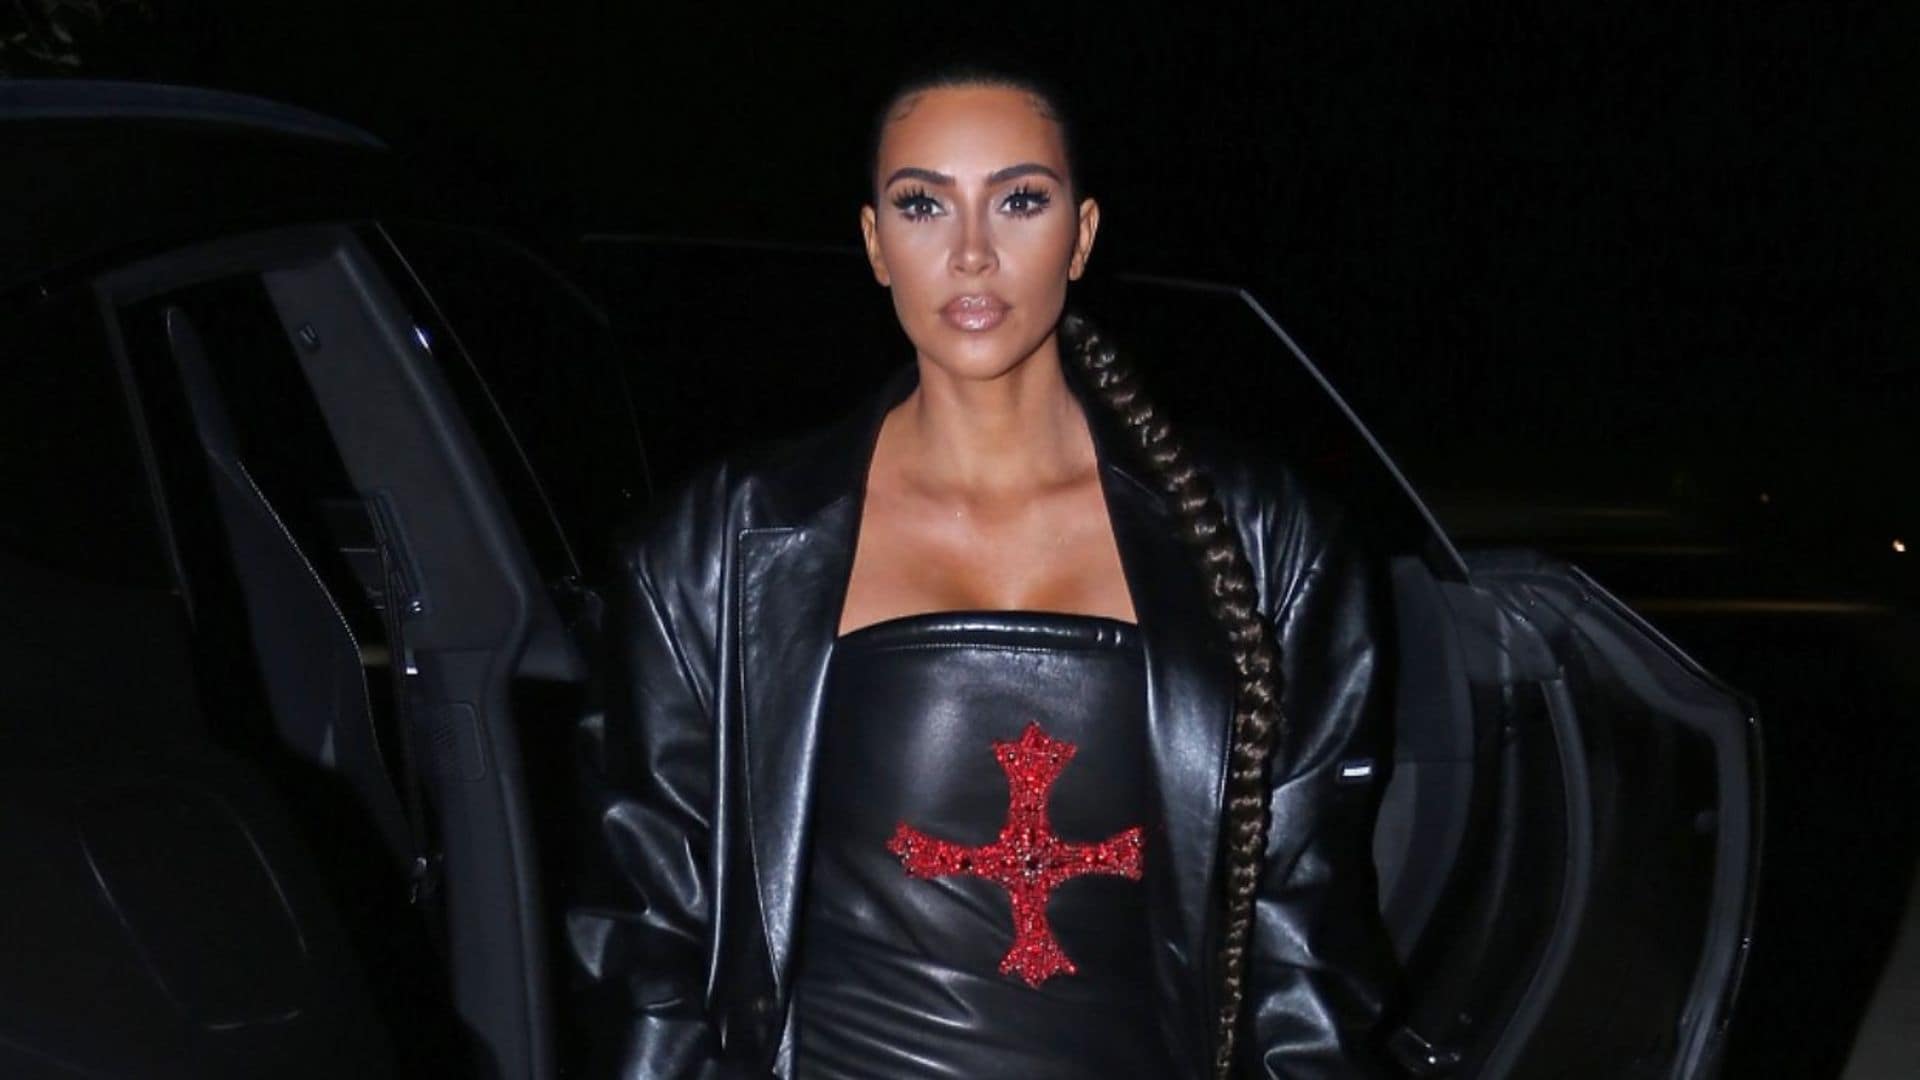 Otro susto para Kim Kardashian: intentan robar en su mansión de Los Ángeles